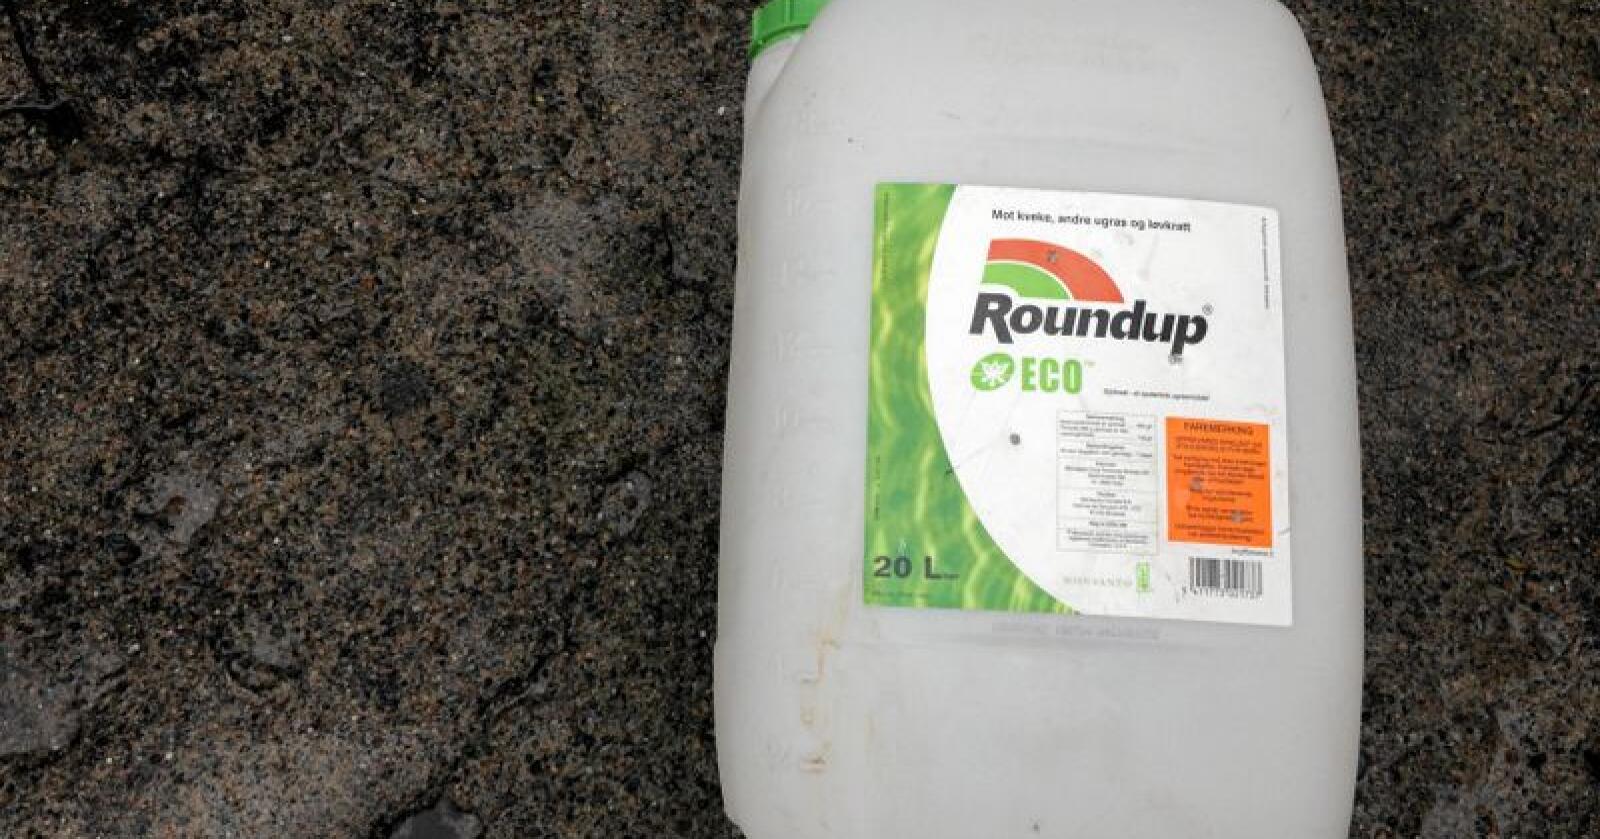 Glyfosat er det mest brukte virkestoffet plantevernmidler i Norge. Her en dunk Roundup, som er det mest kjente glyfosat-produktet. Foto: Svein Egil Hatlevik